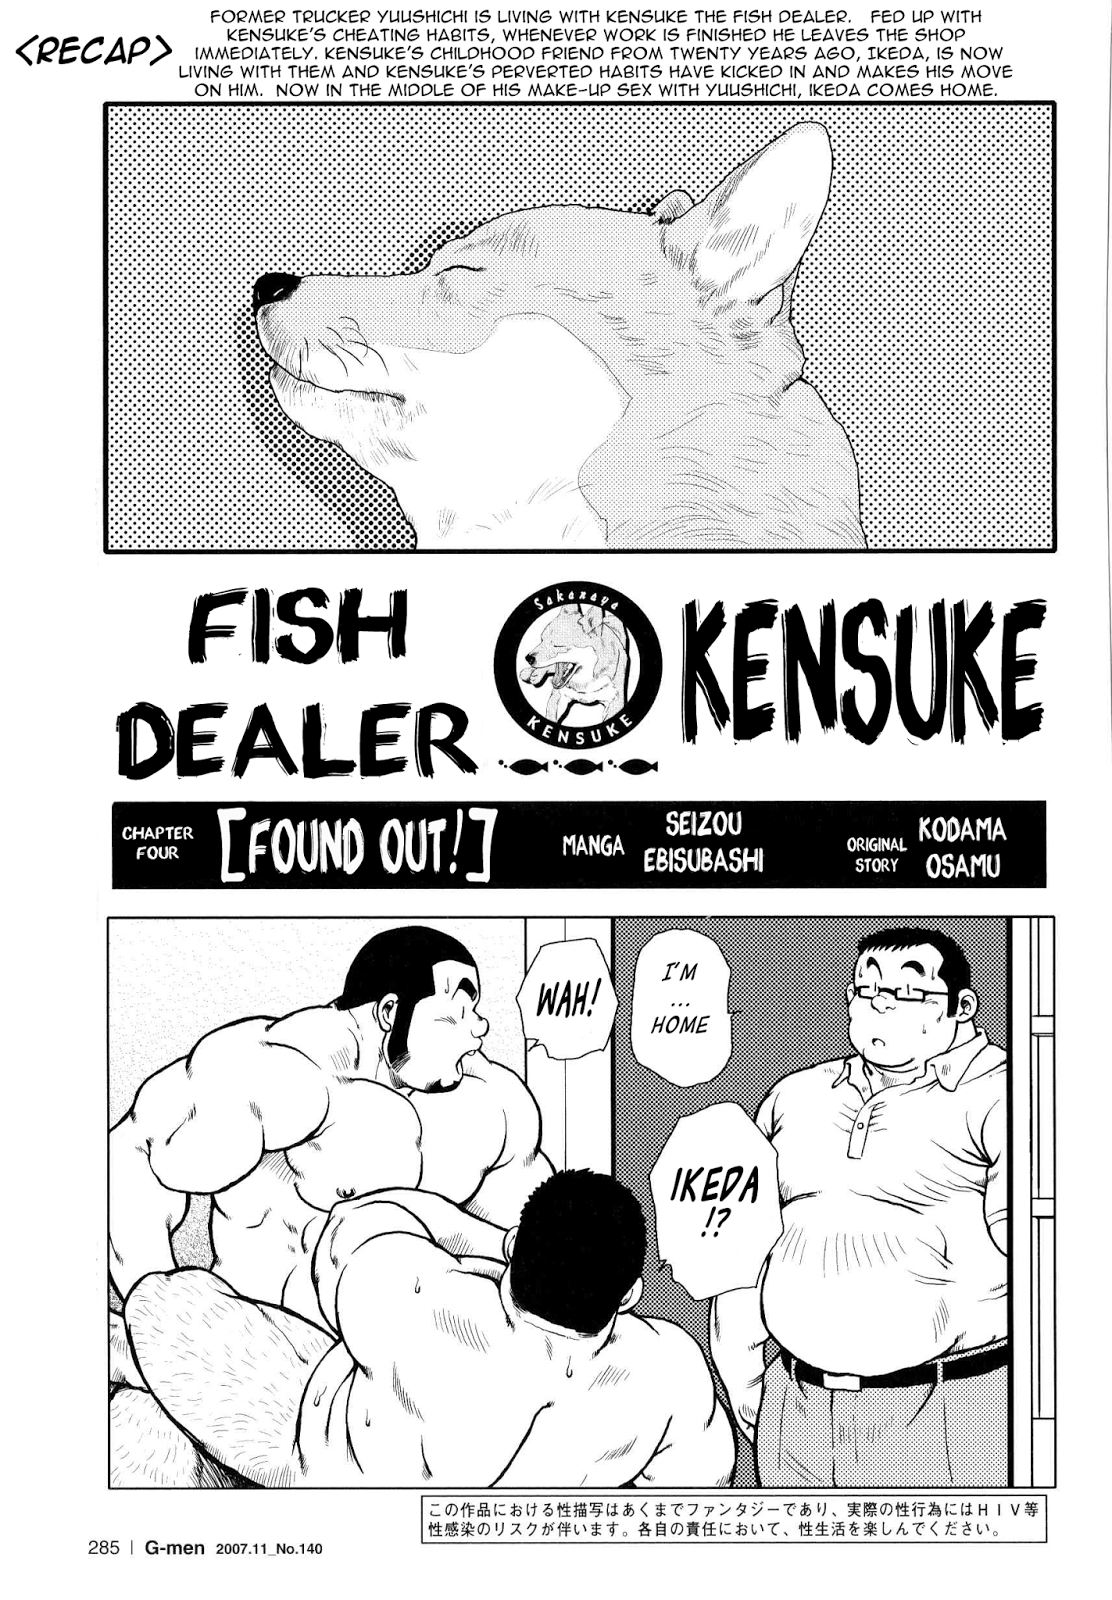 Seizou Ebisubashi Fish Dealer Kensuke 04